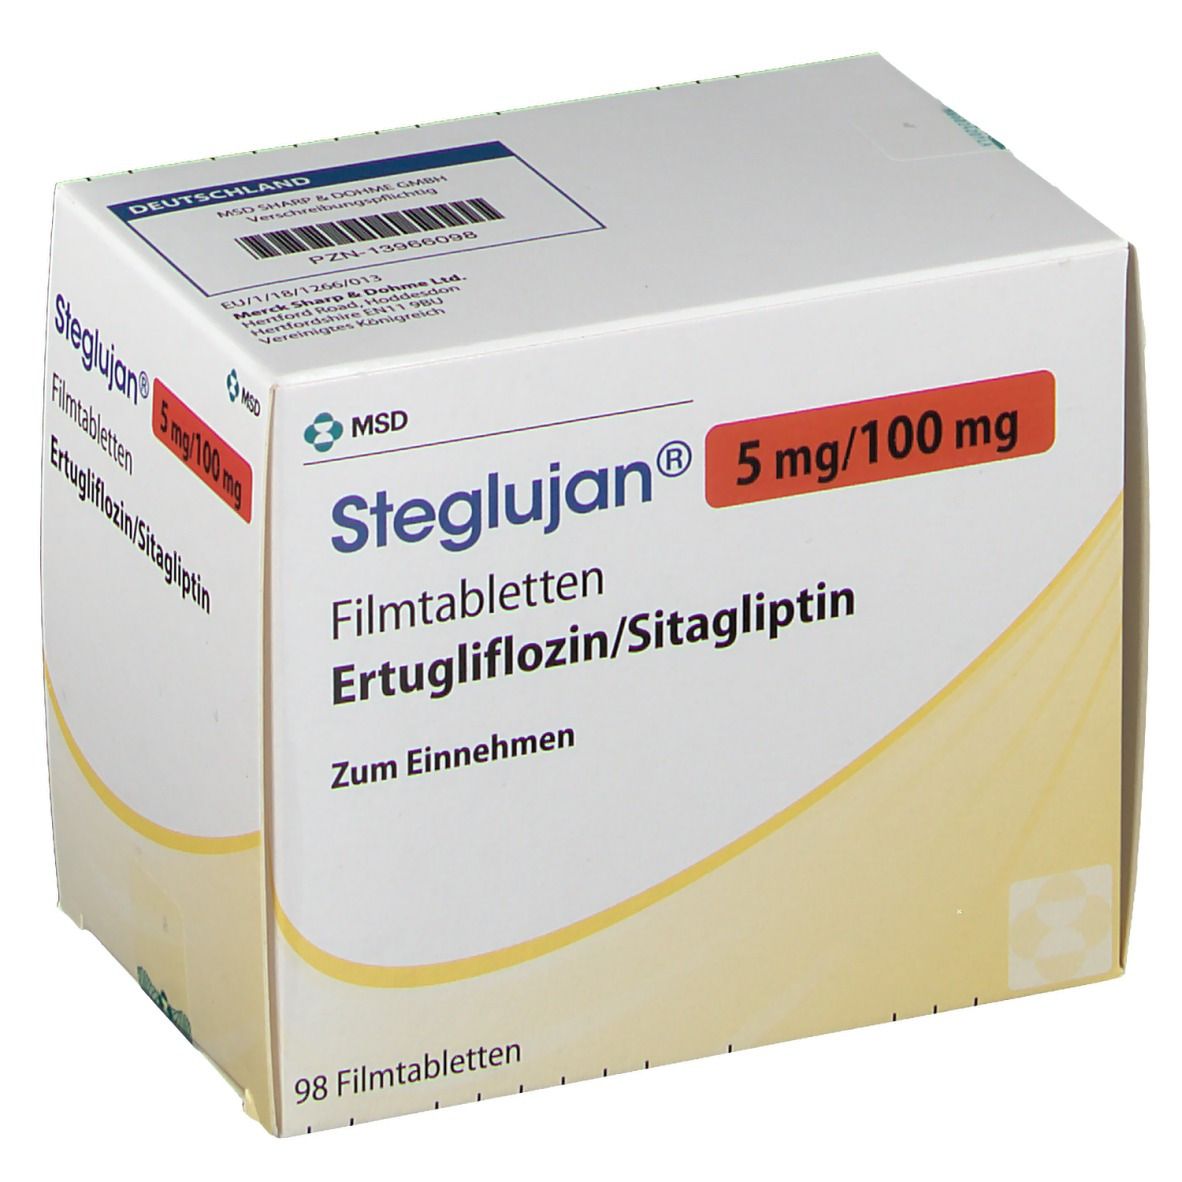 Steglujan® 5 mg/100 mg